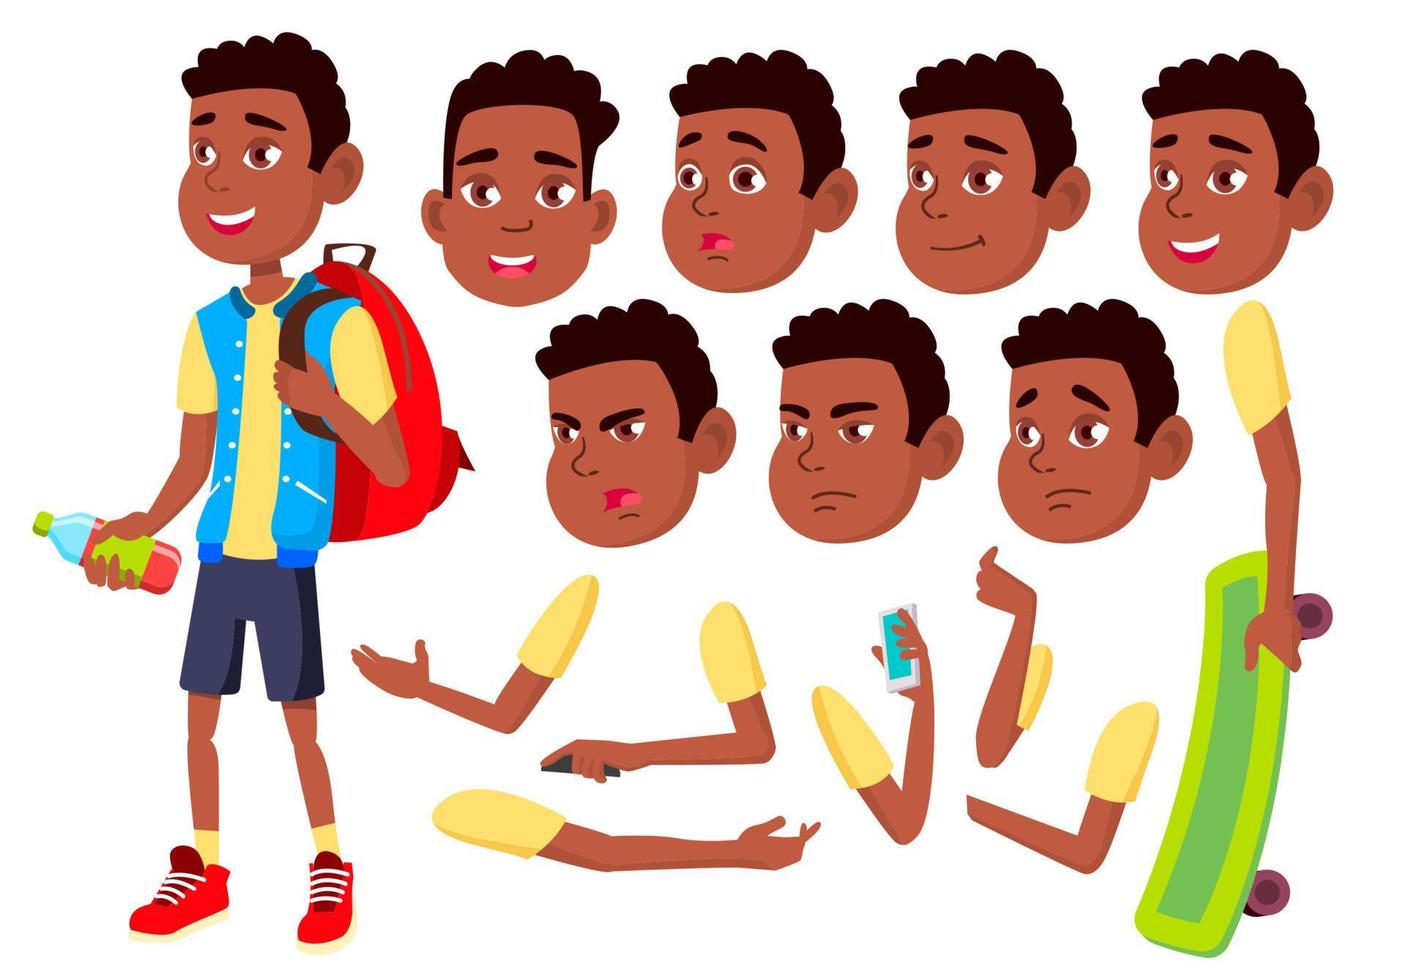 niño, niño, niño, vector adolescente. infancia feliz. afroamericano, negro. enfrentar emociones, varios gestos. conjunto de creación de animación. ilustración de personaje de dibujos animados plano aislado